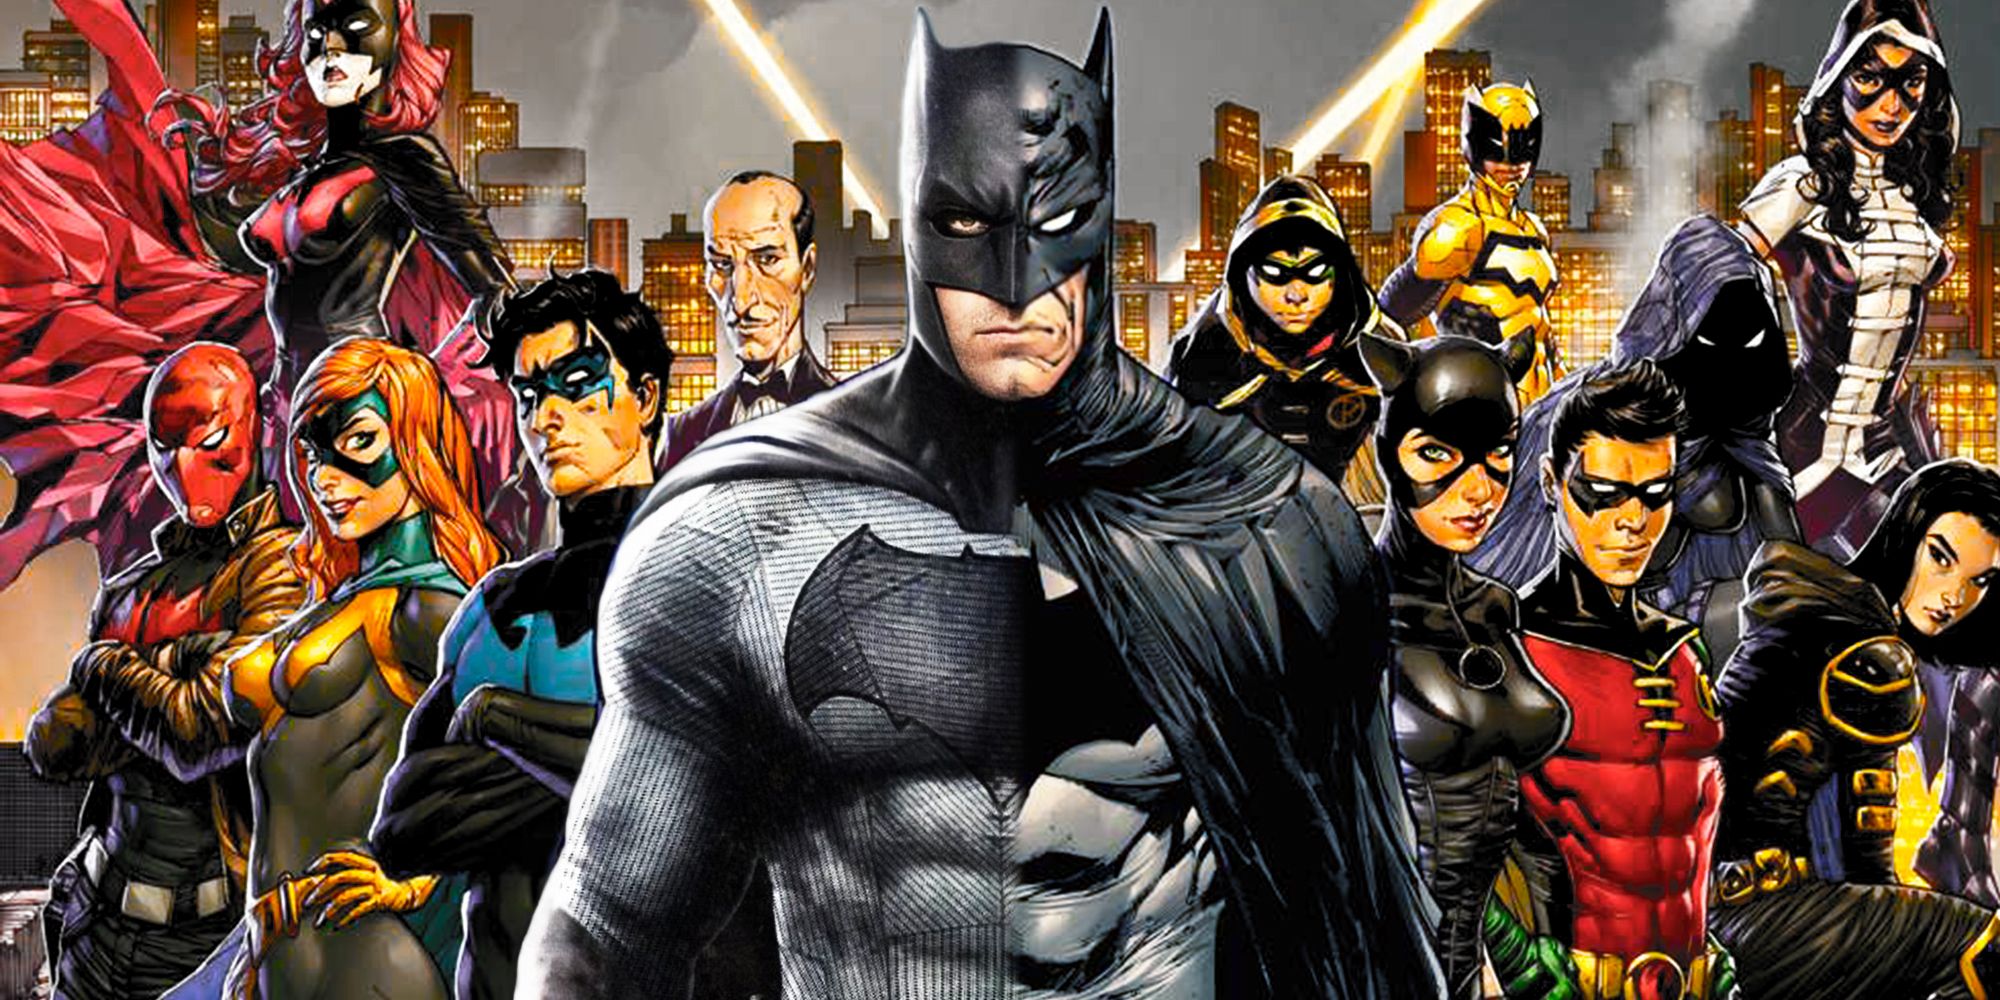 Ben Affleck's DCEU Batman and the Bat Family in DC Comics